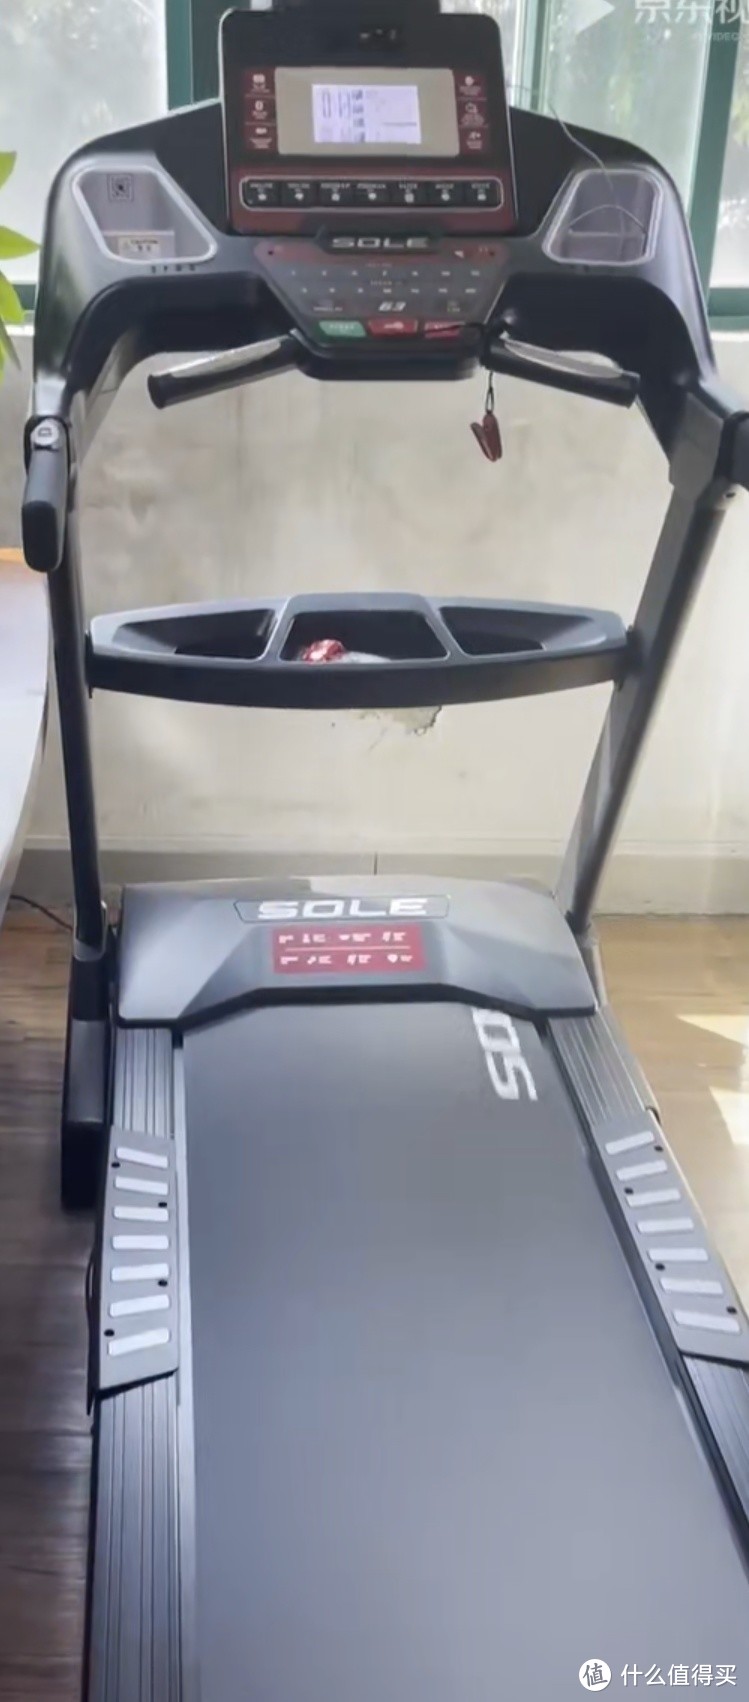 新年新目标，用 SOLE 跑步机 F63 开启健康生活